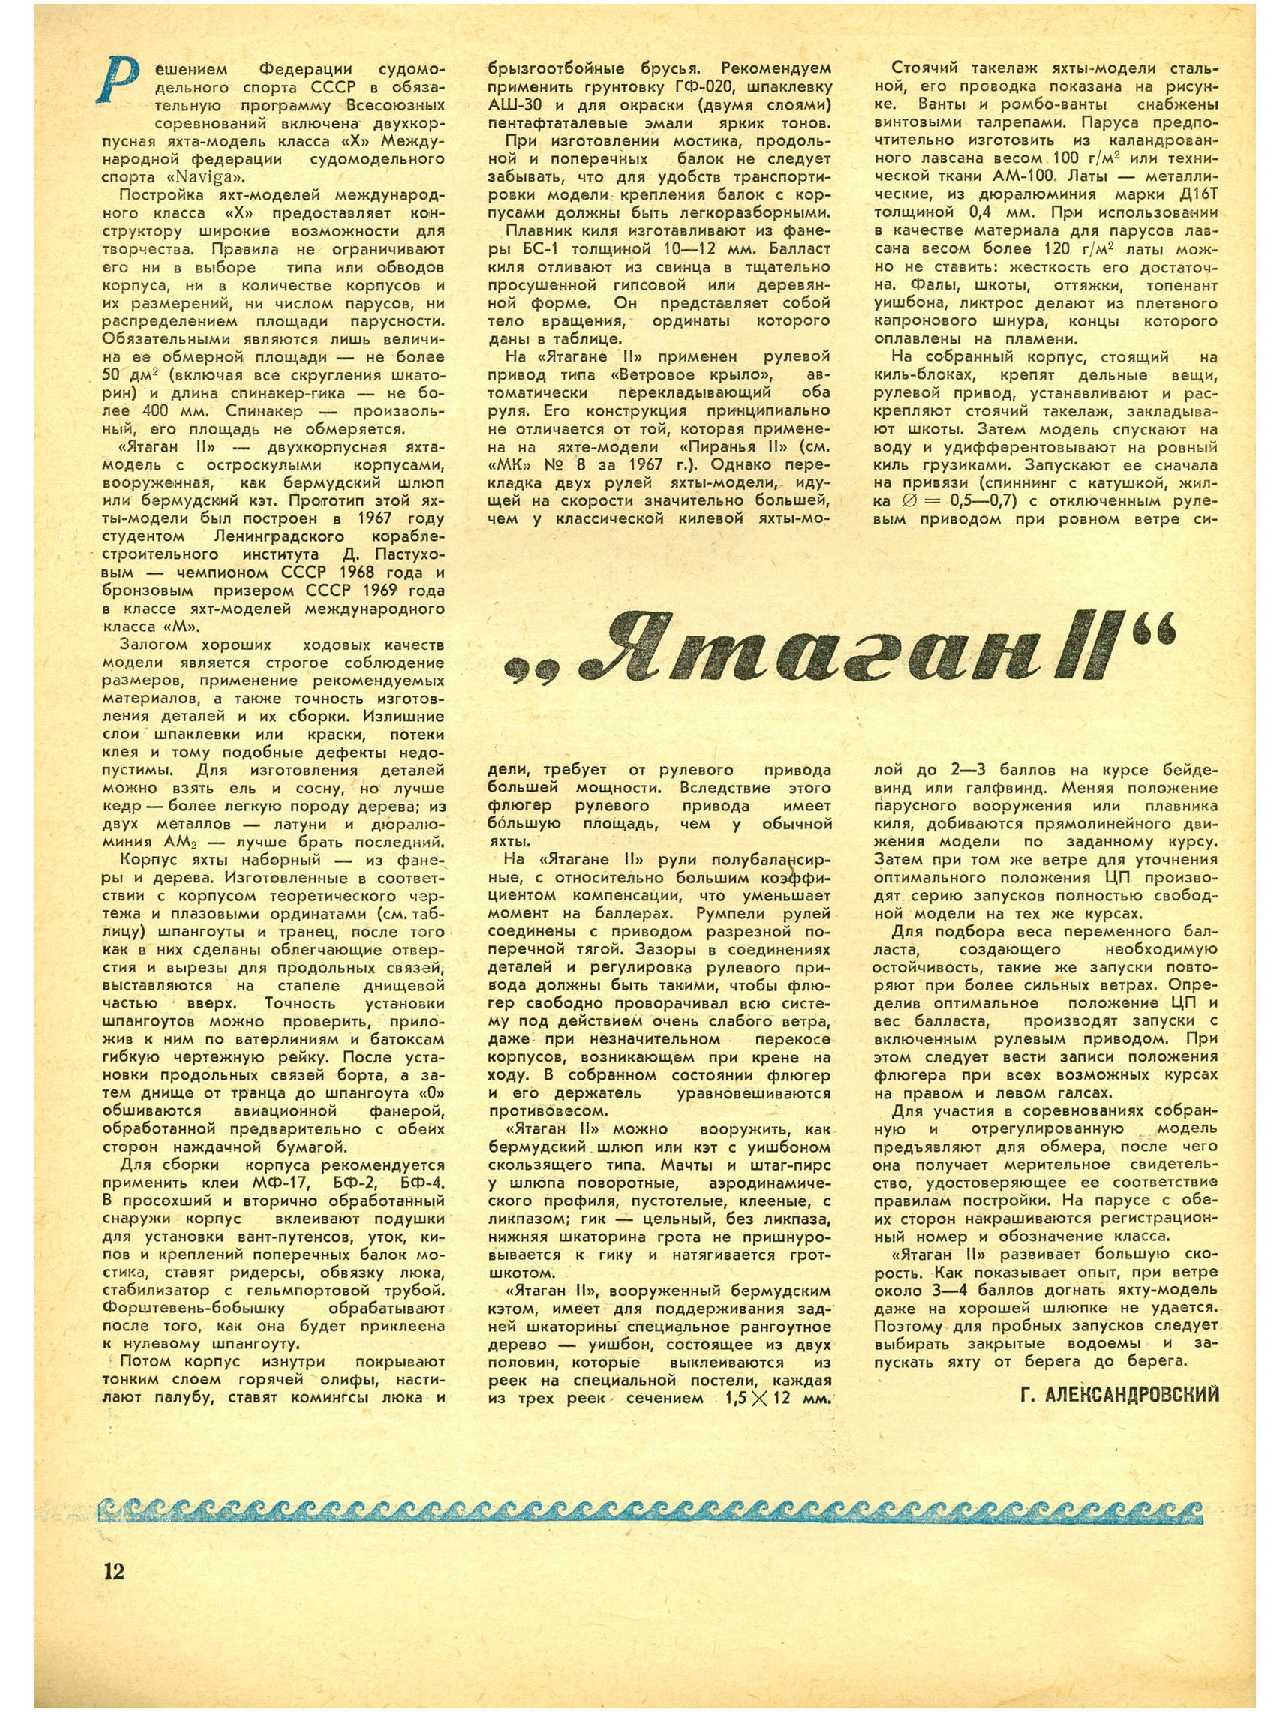 МК 1, 1971, 12 c.